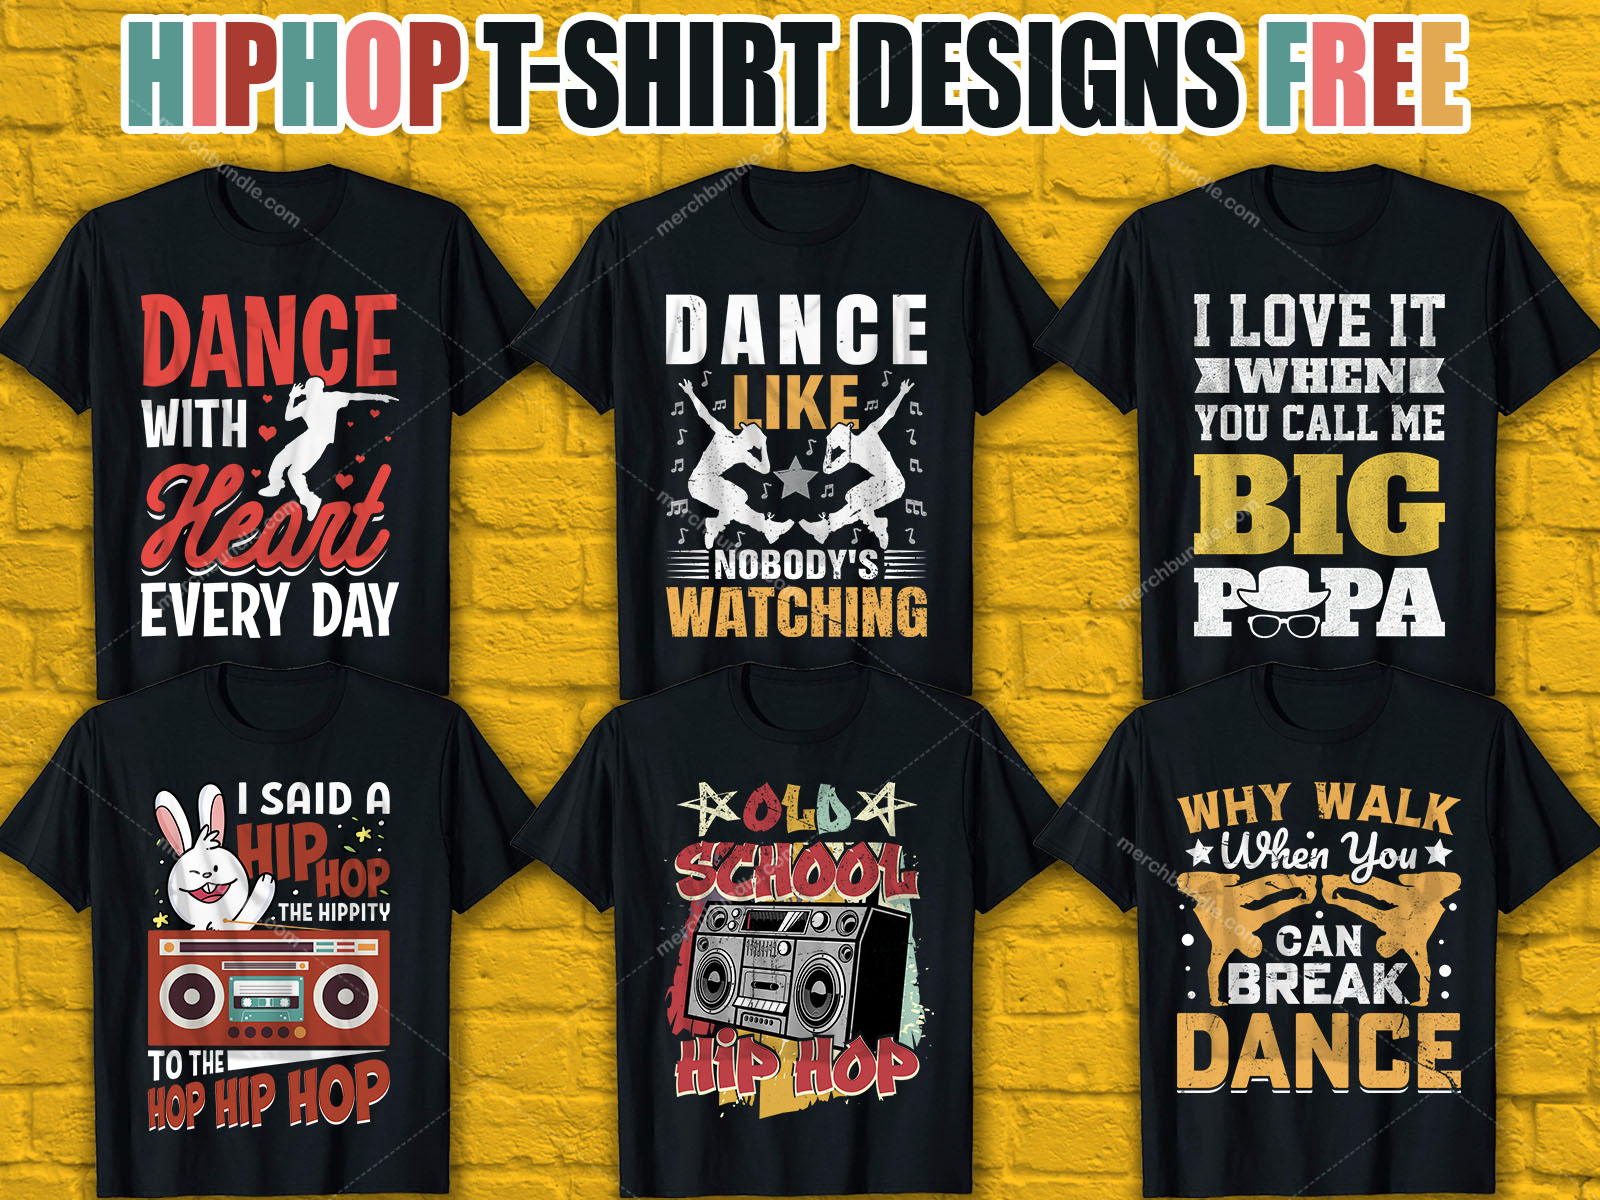 Pickering Så mange stamme HipHop T-Shirt Design Free Download by Asha for Team MerchBundle on Dribbble